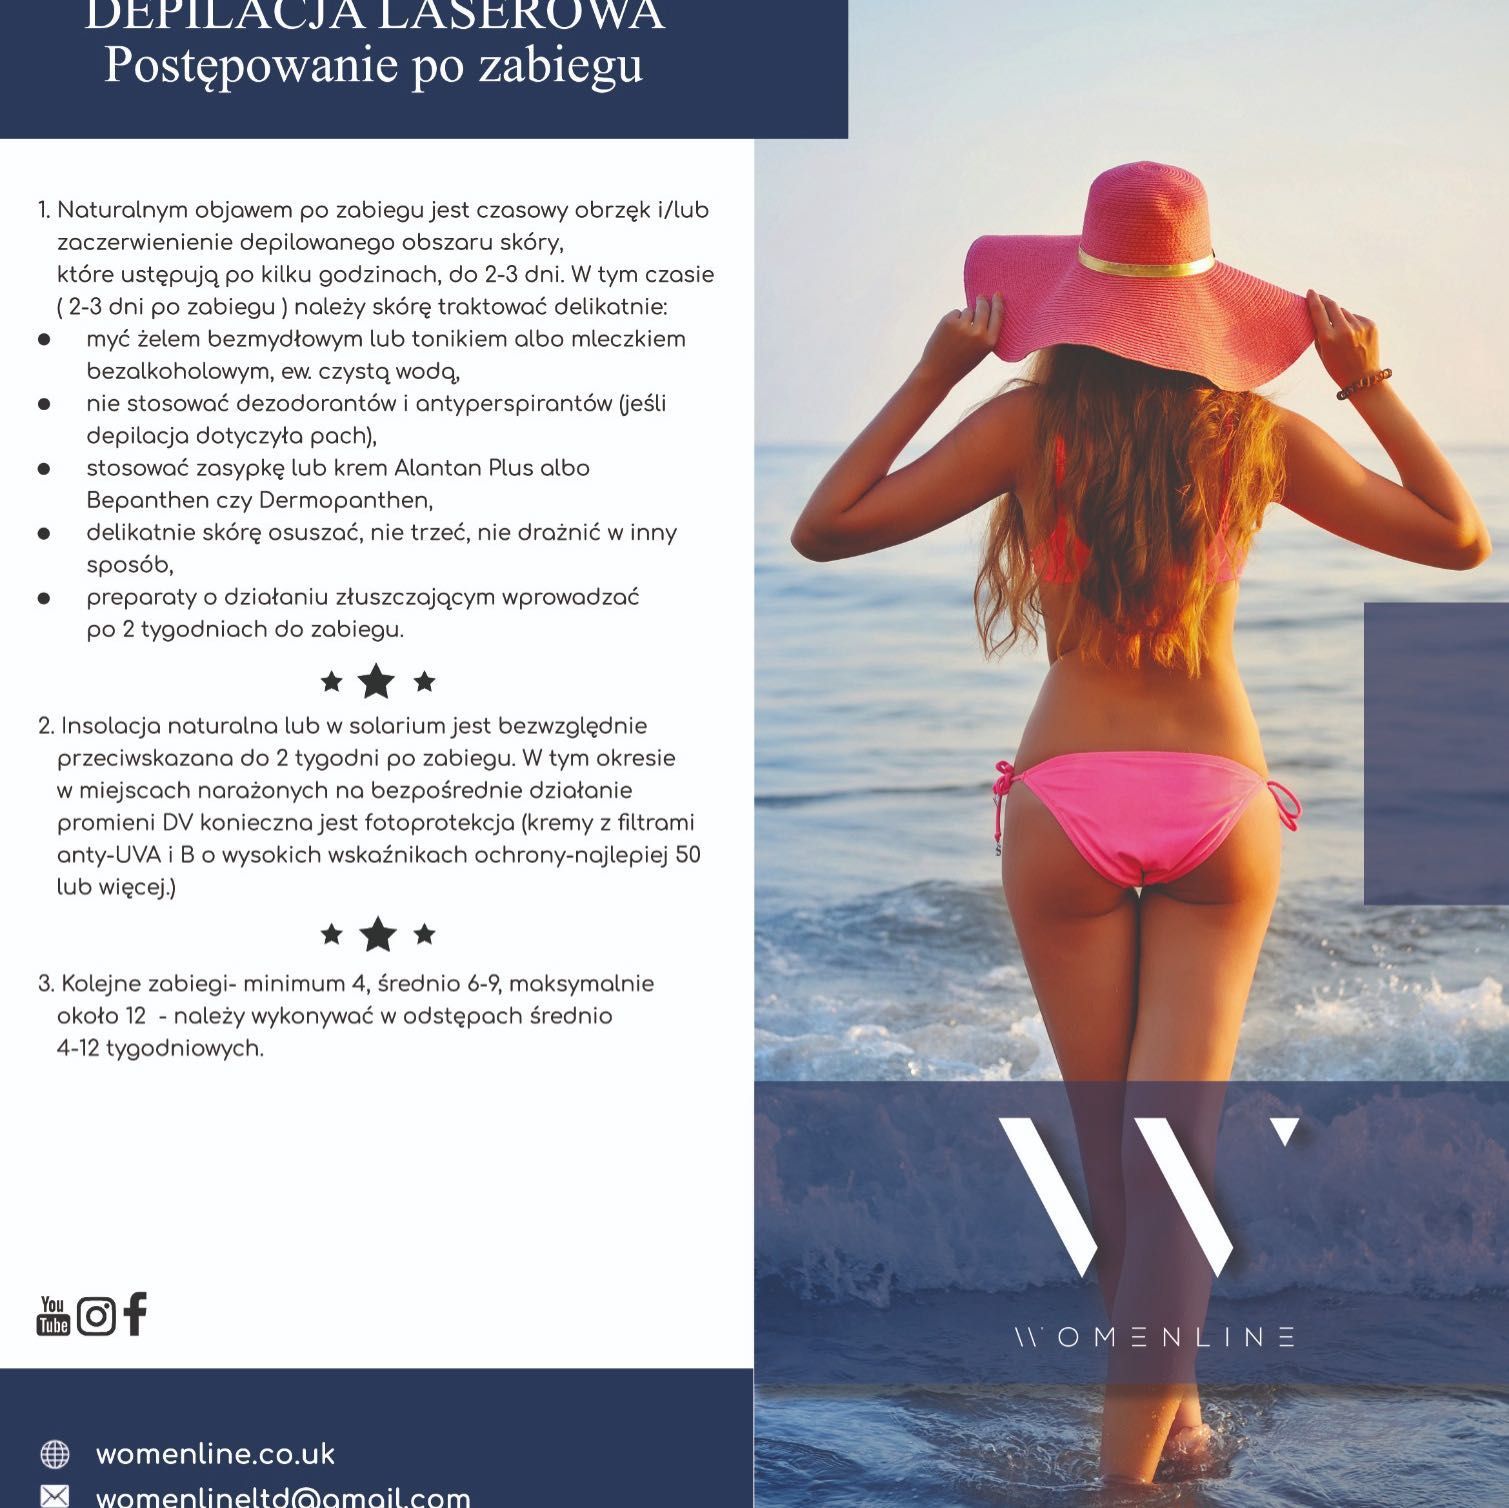 Portfolio usługi Depilacja laserowa bikini 30% off - 6 zabiegów